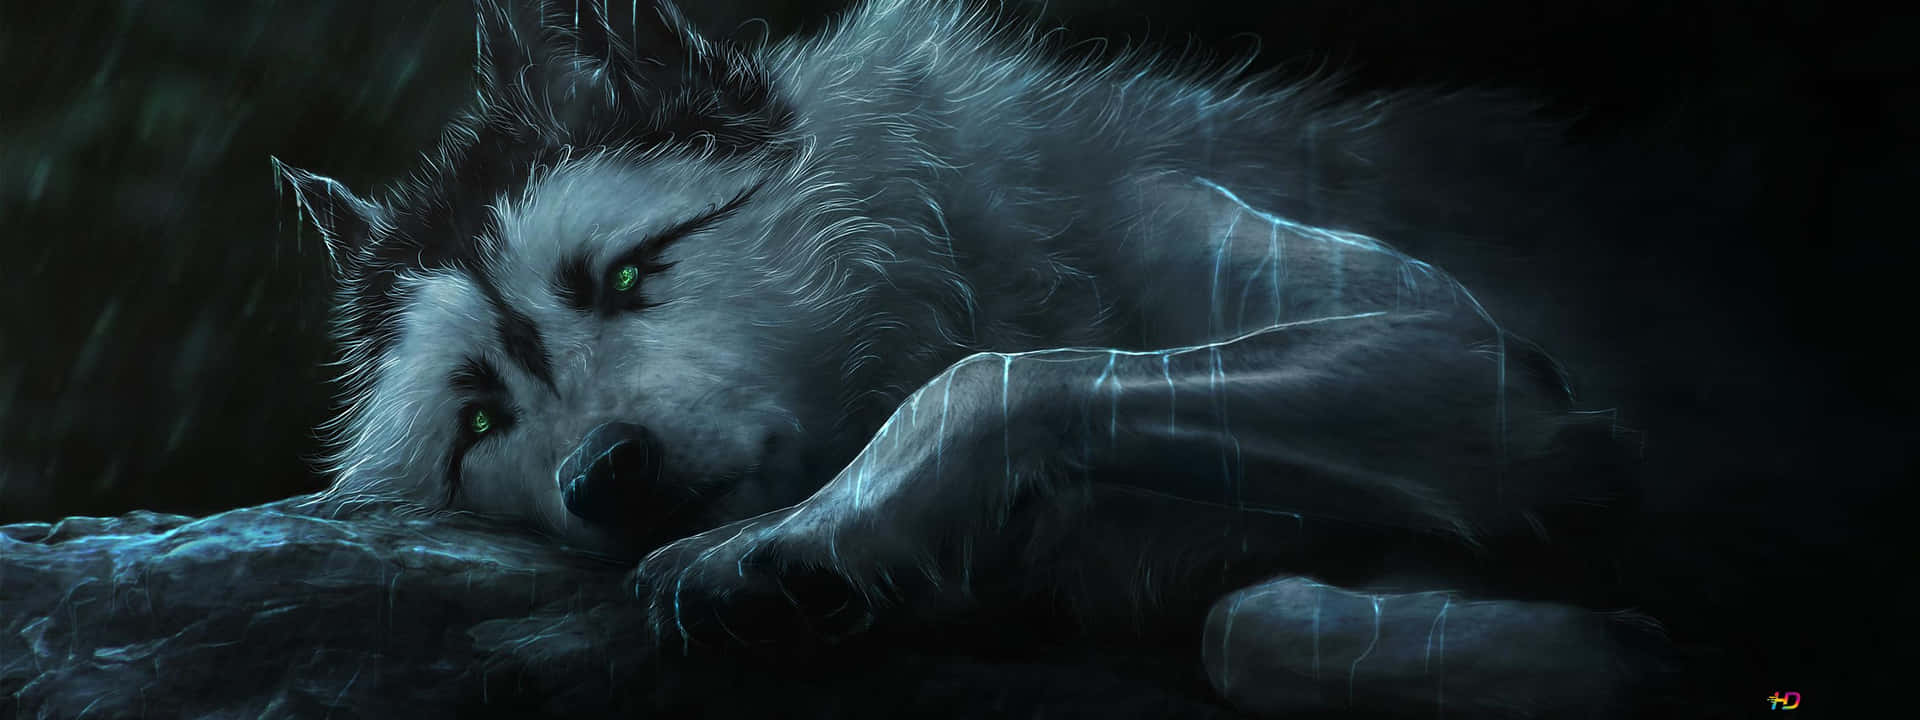 Oscuro,majestuoso Y Fuerte: Este Genial Lobo De Anime Es Una Muestra De Poder Y Gracia. Fondo de pantalla